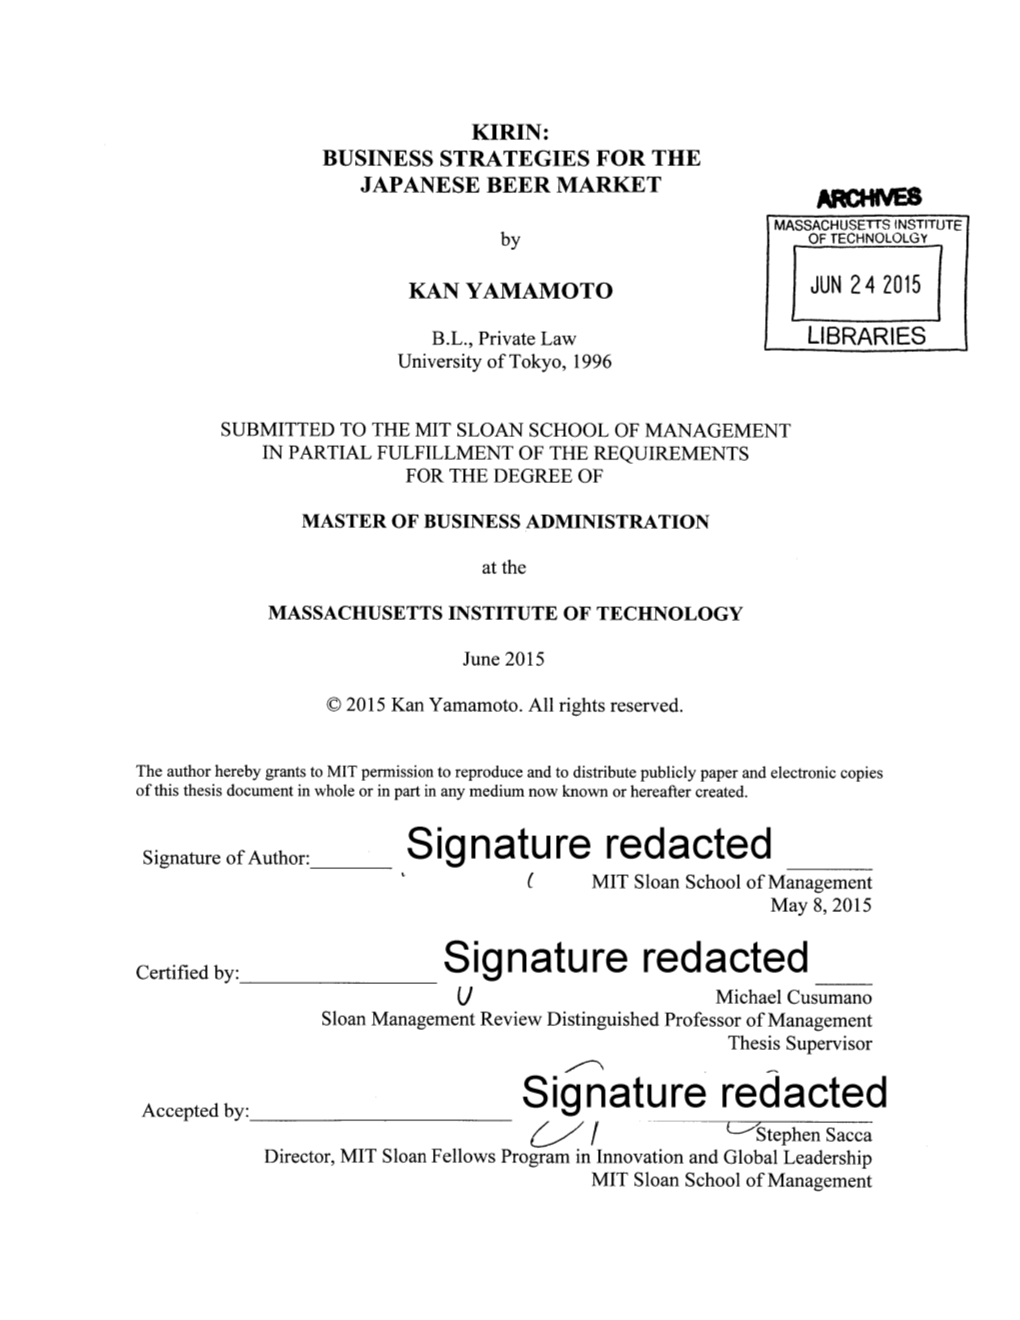 Signature Redacted___Signature Redacted